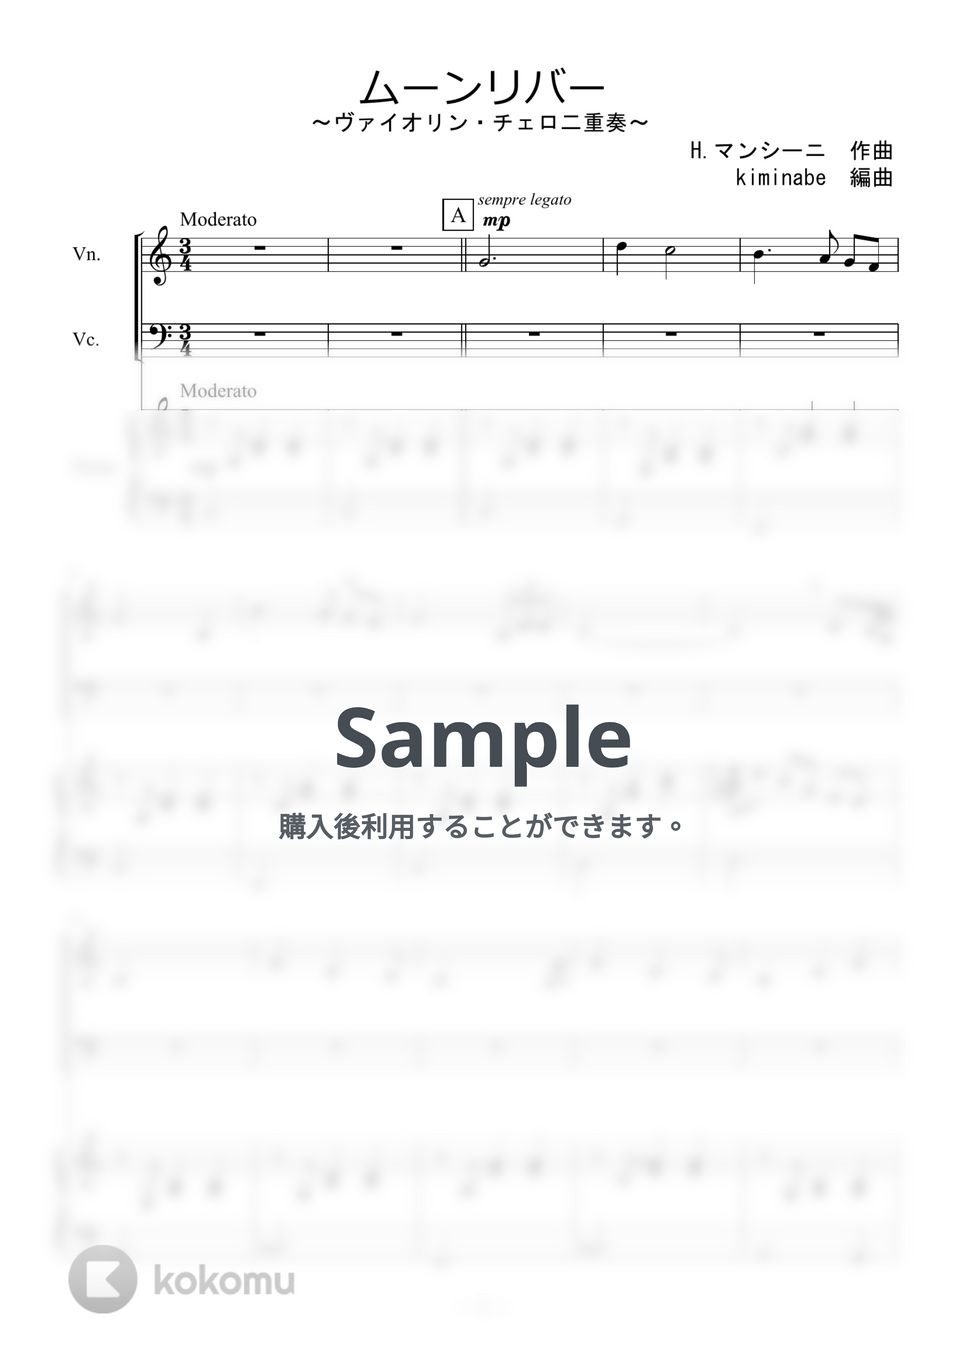 ヘンリー・マンシーニ - ムーンリバー (ヴァイオリン・チェロ二重奏) by kiminabe